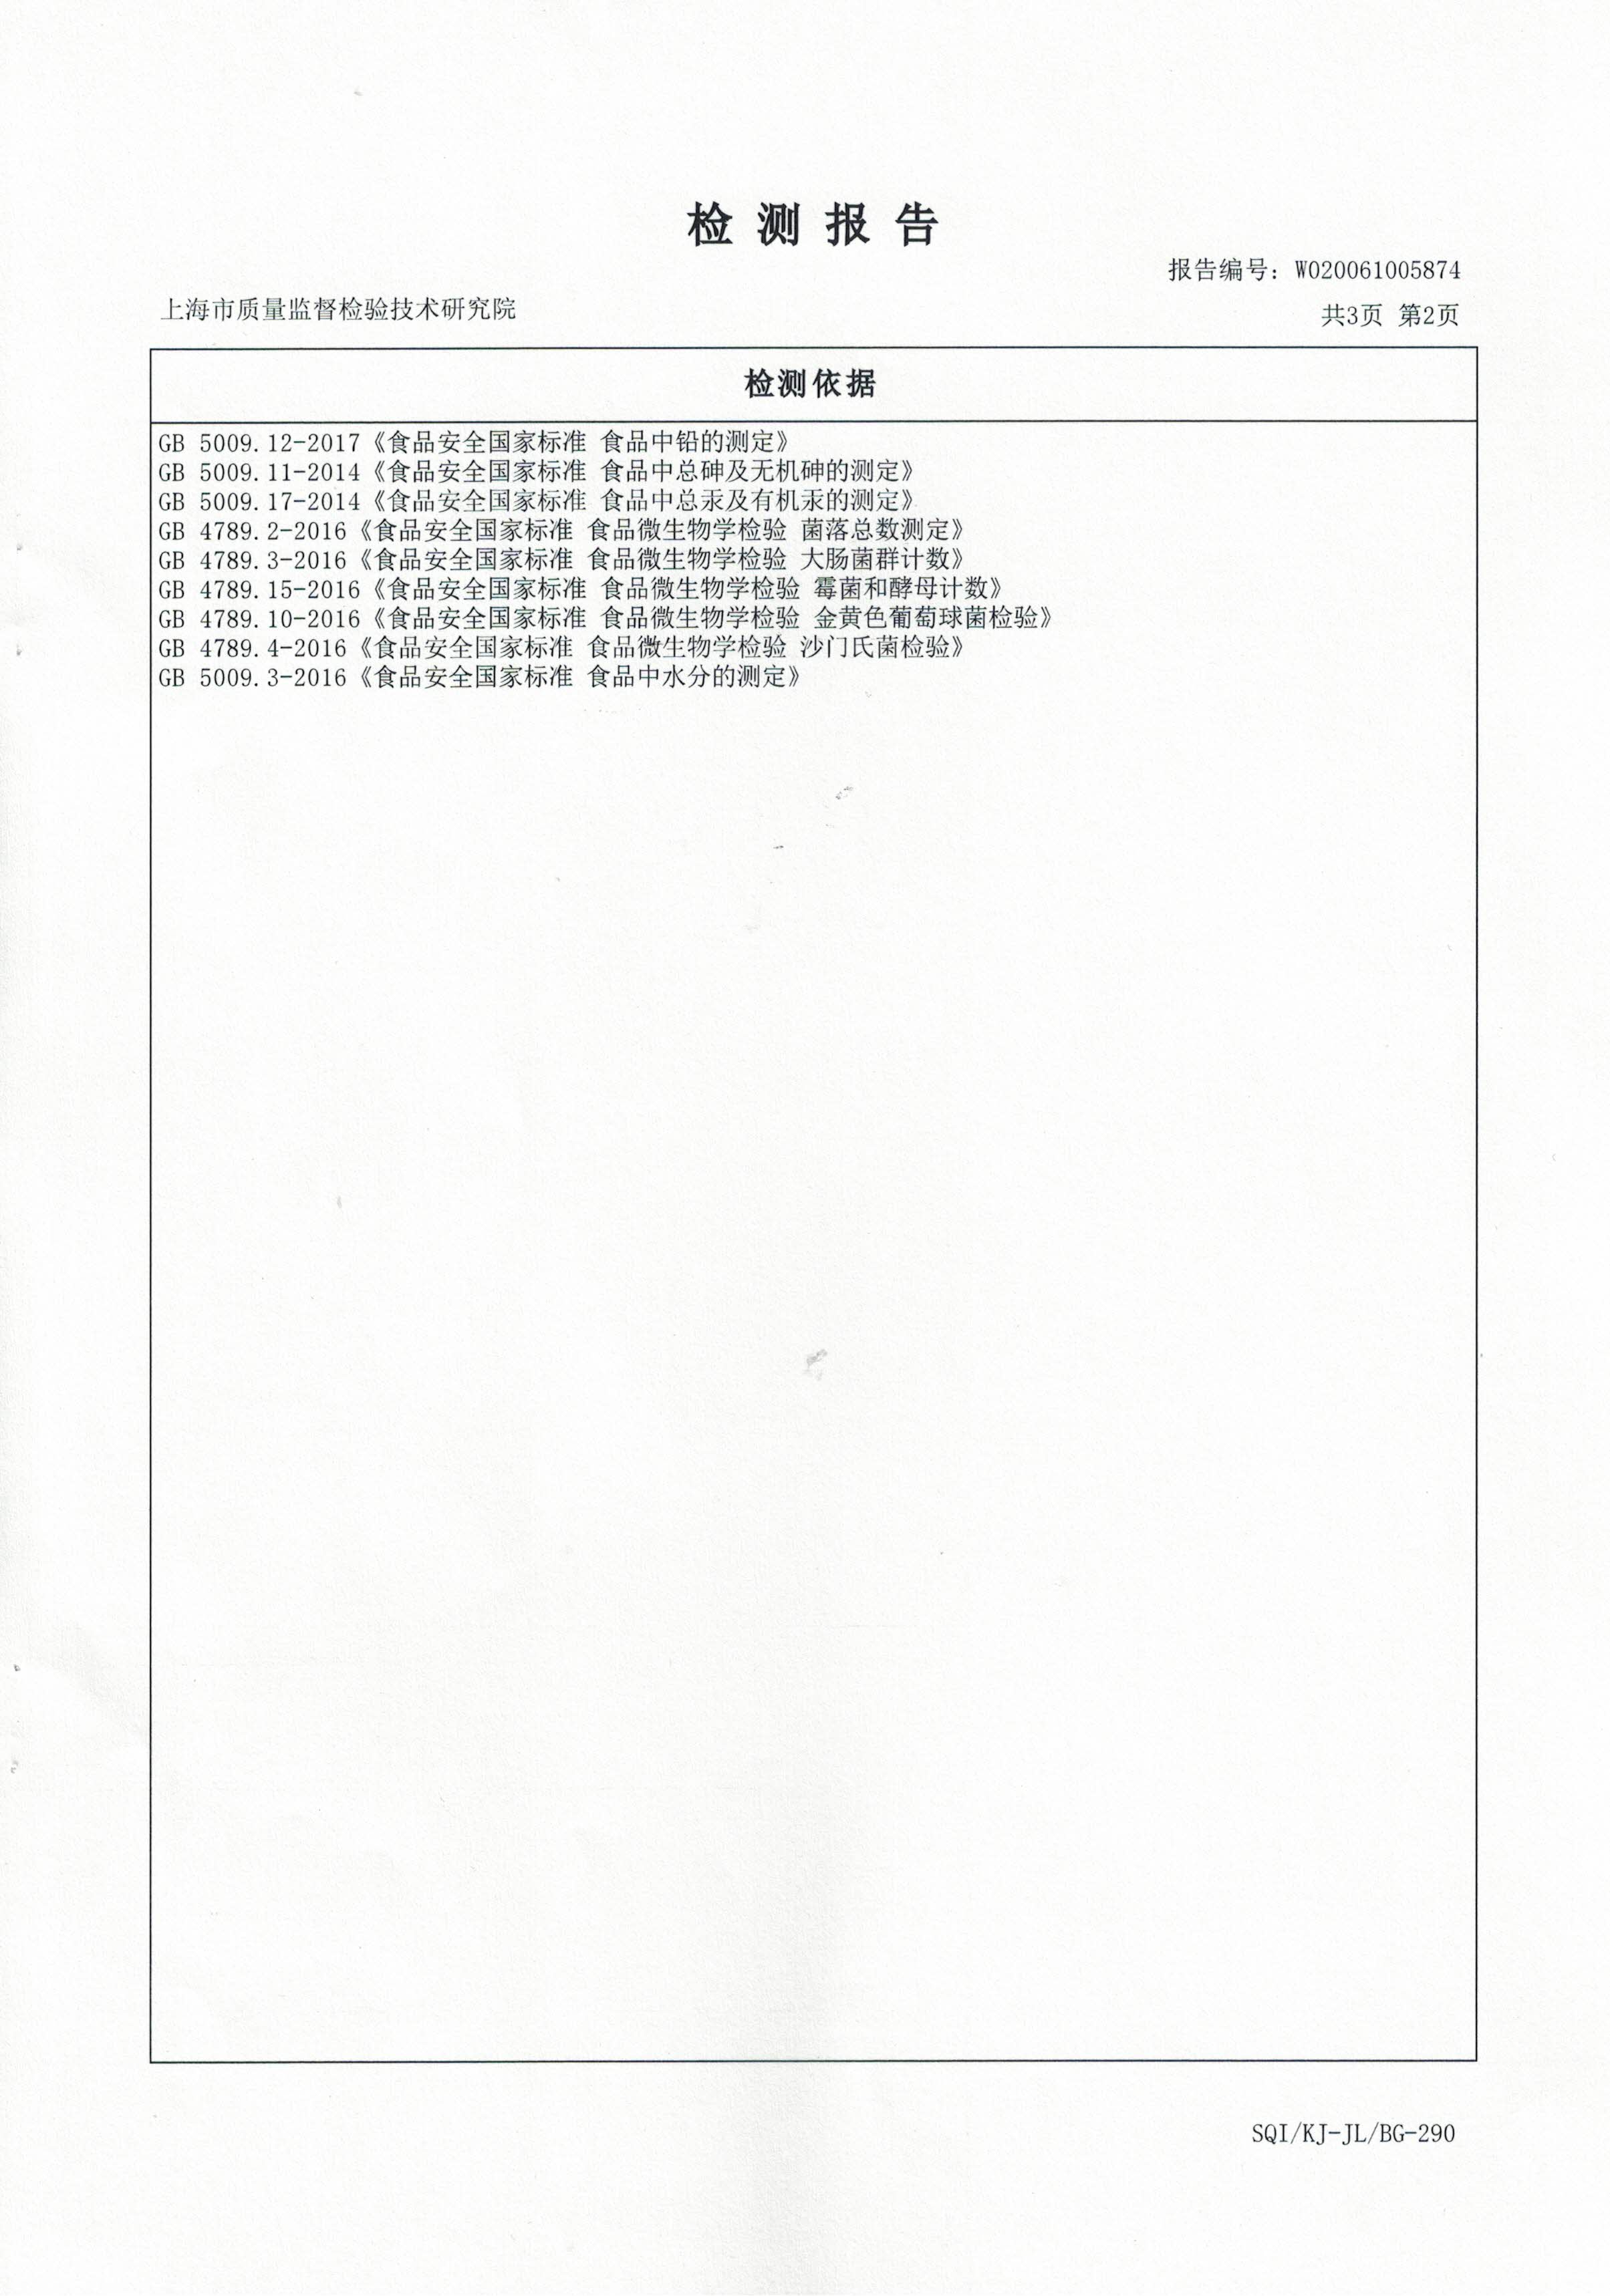 2020年4月24日 大汉灵芝菌丝体 重金属含量检测报告3